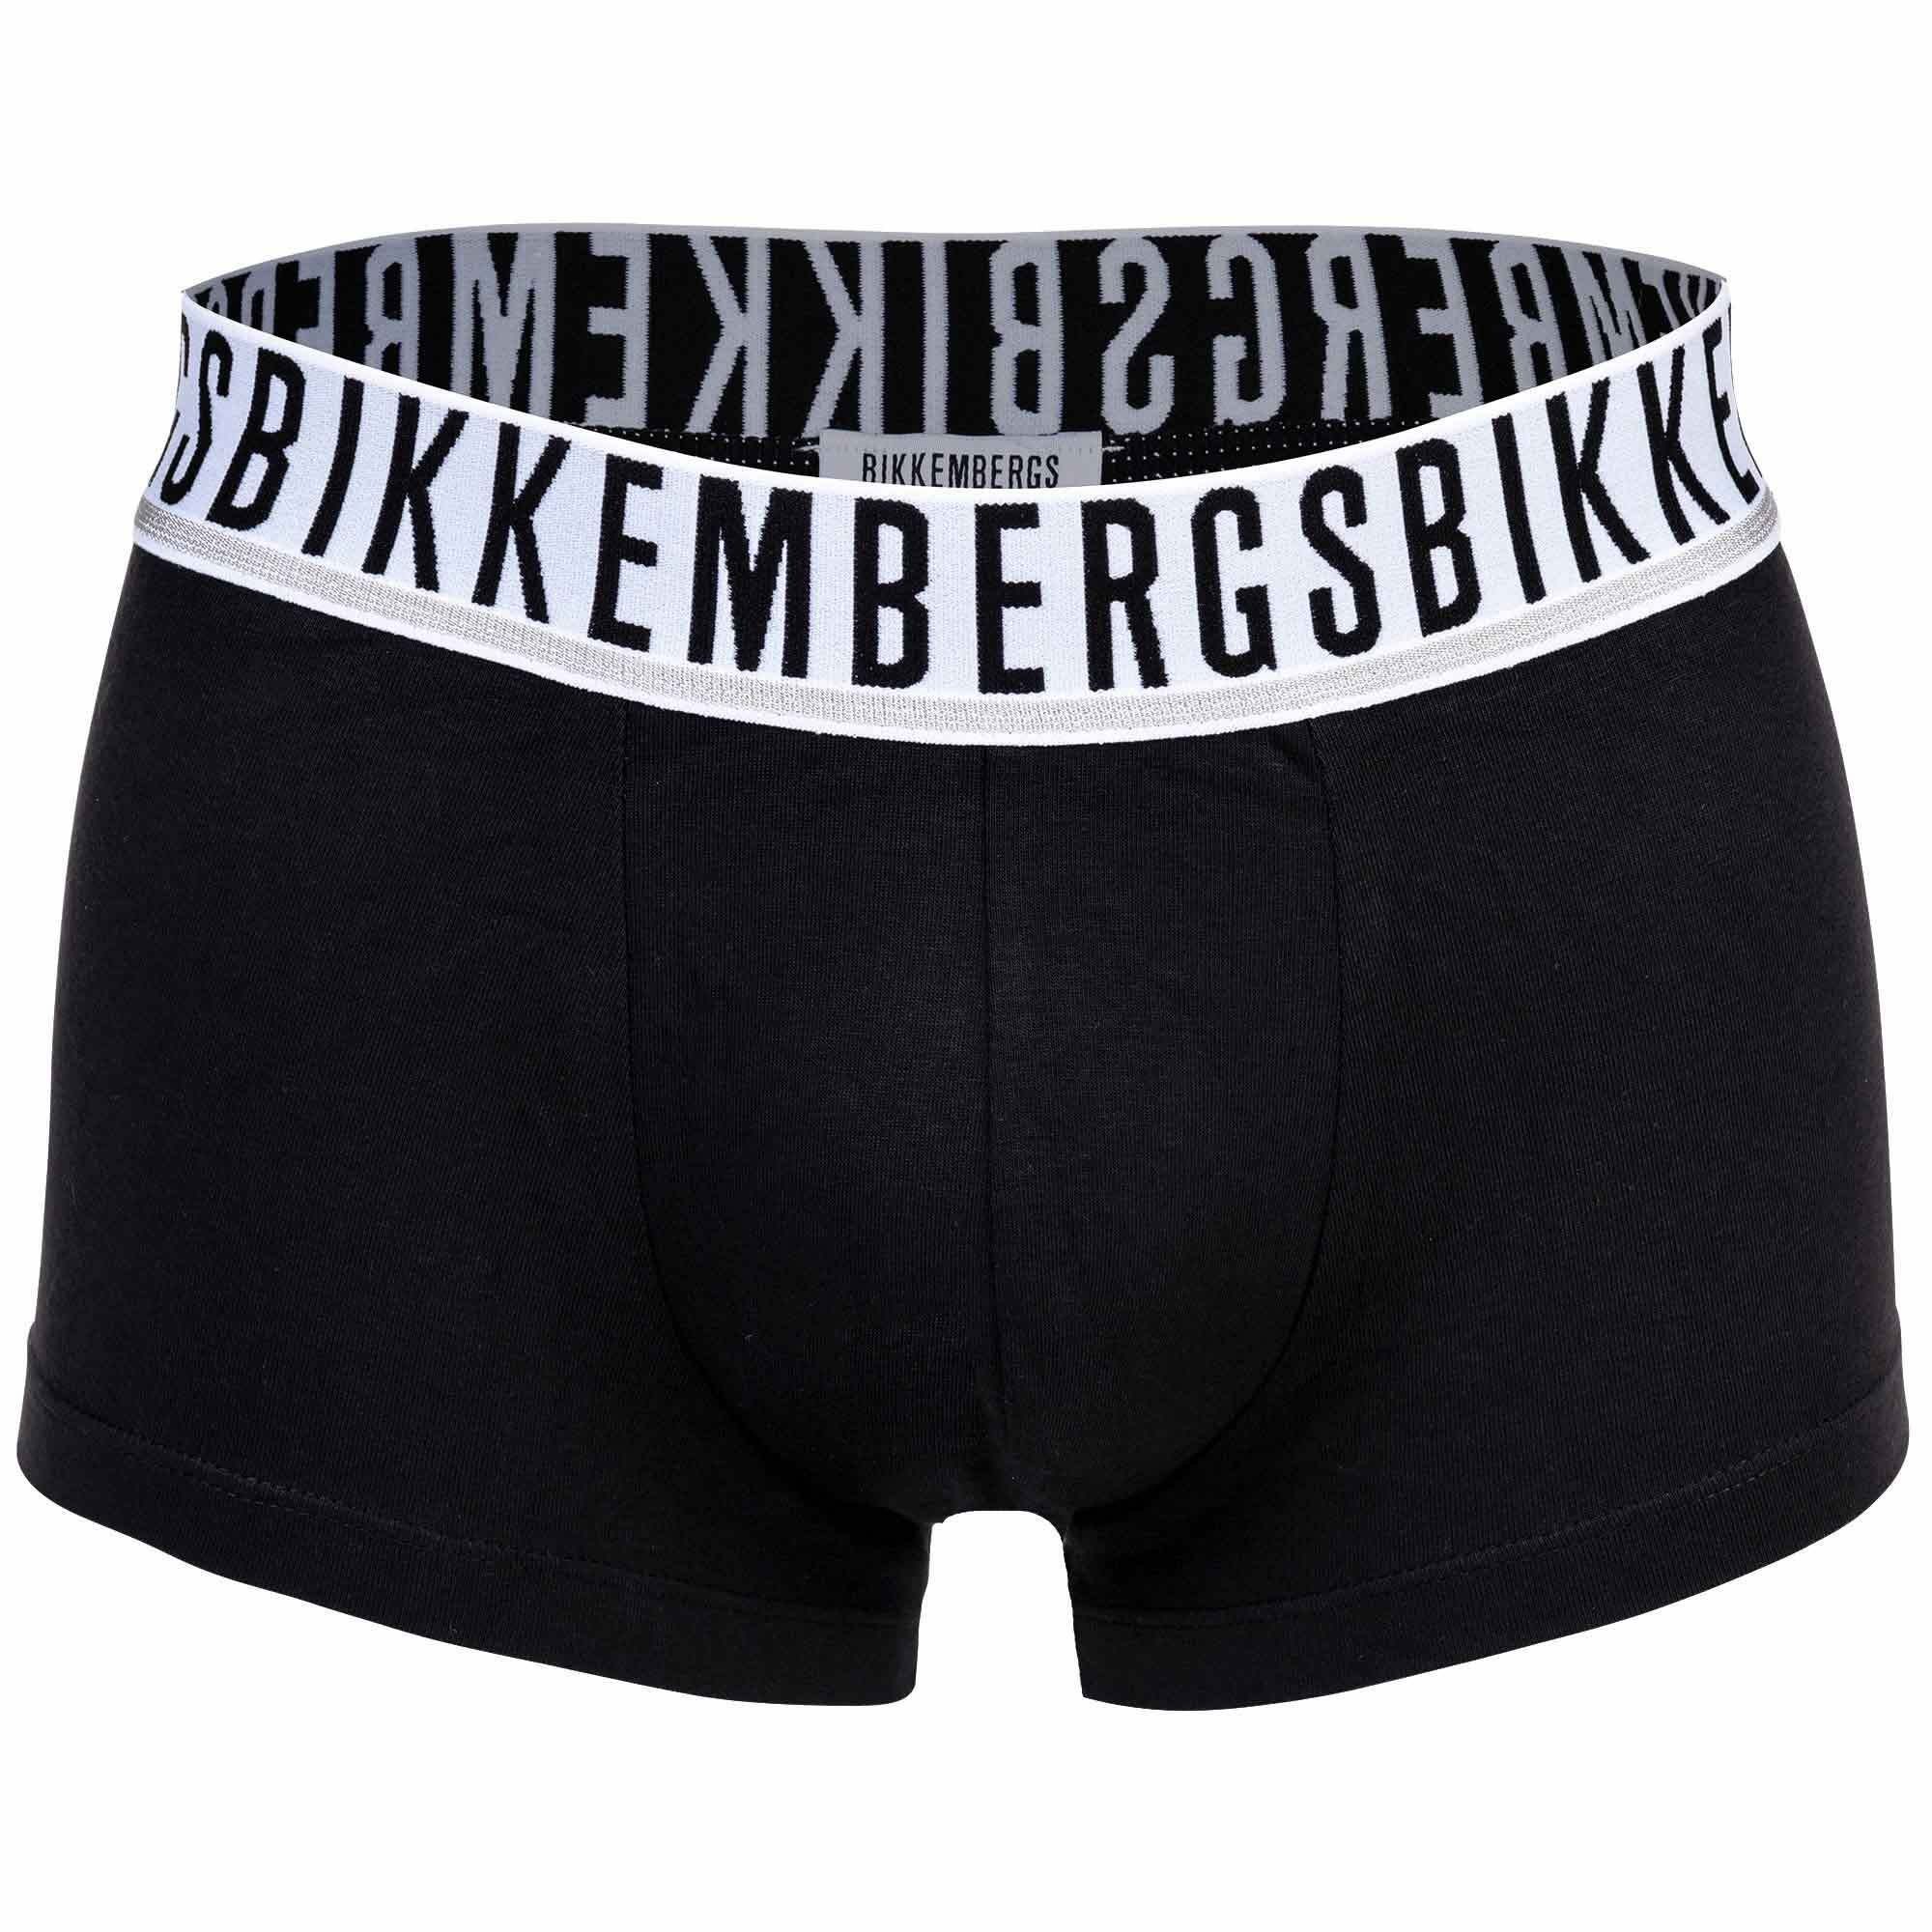 Bikkembergs Boxer Herren TRI-PACK - 3er TRUNKS Boxershorts, Schwarz Pack